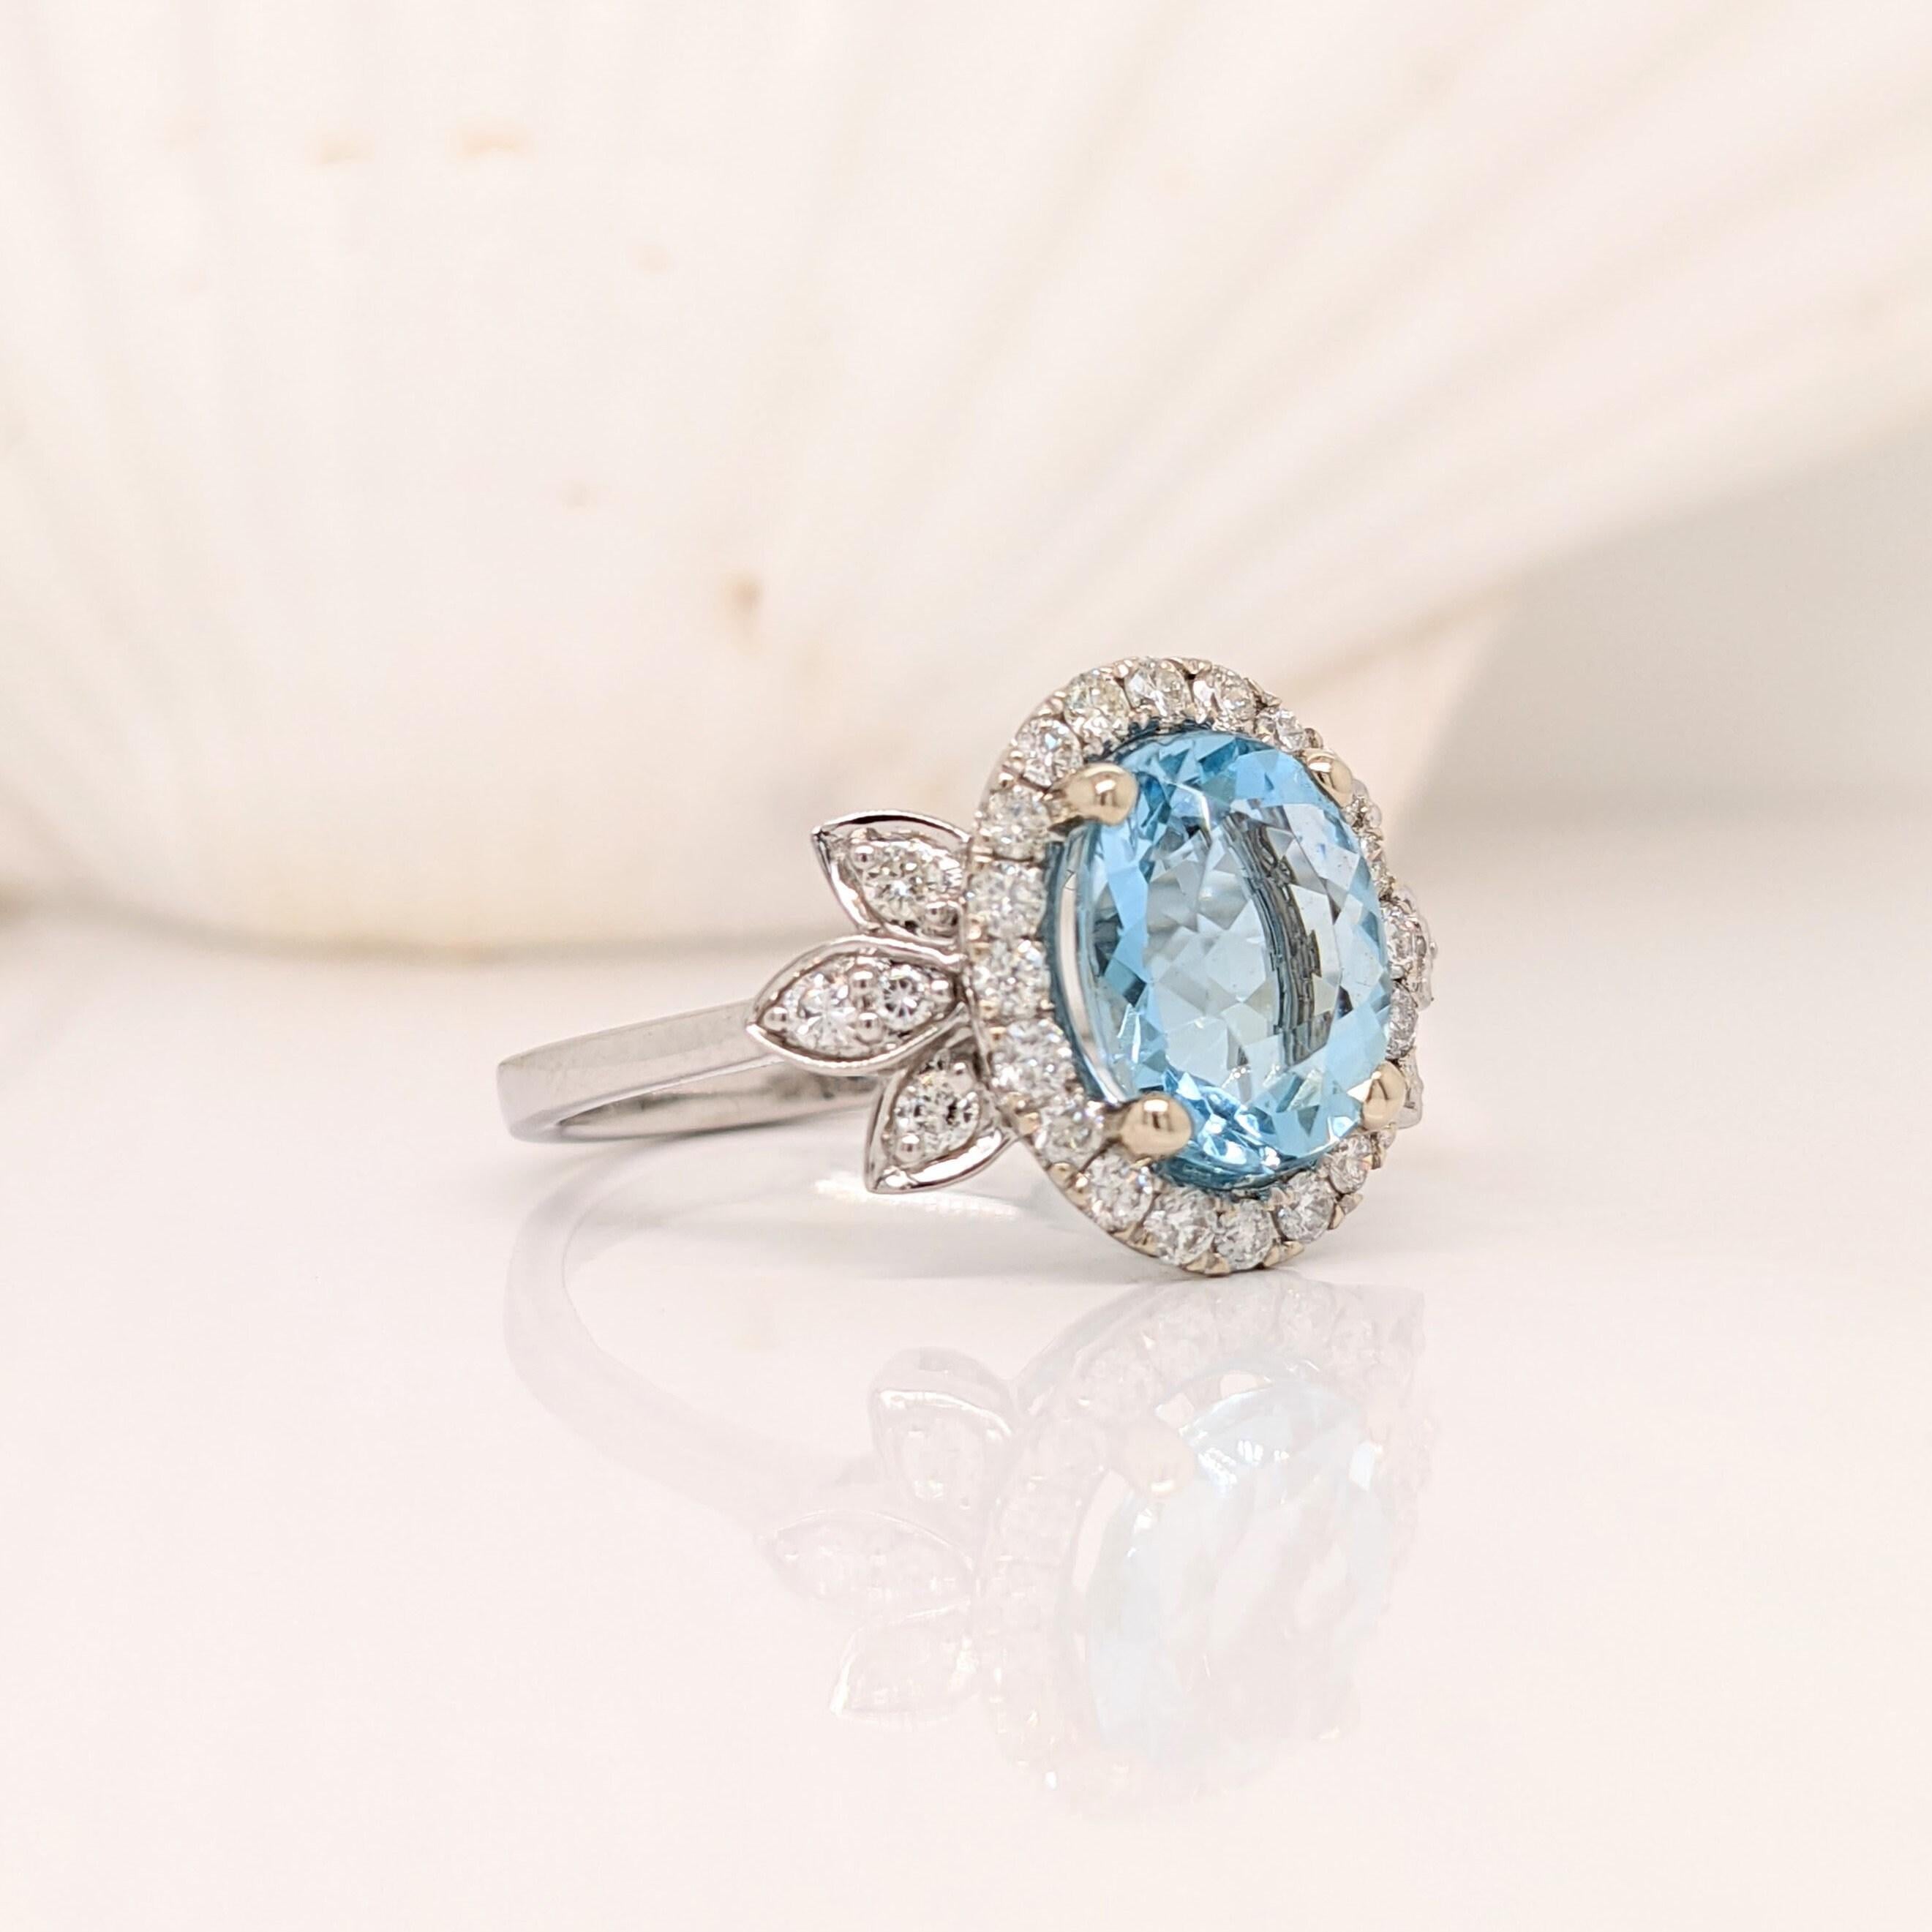 Ein blauer Aquamarin in 14 Karat Weißgold mit Diamanten aus natürlichen Minen. Ein auffälliges Ringdesign, perfekt für eine auffällige Verlobung oder einen Jahrestag. Dieser Ring ist auch ein schöner Geburtssteinring für Ihre